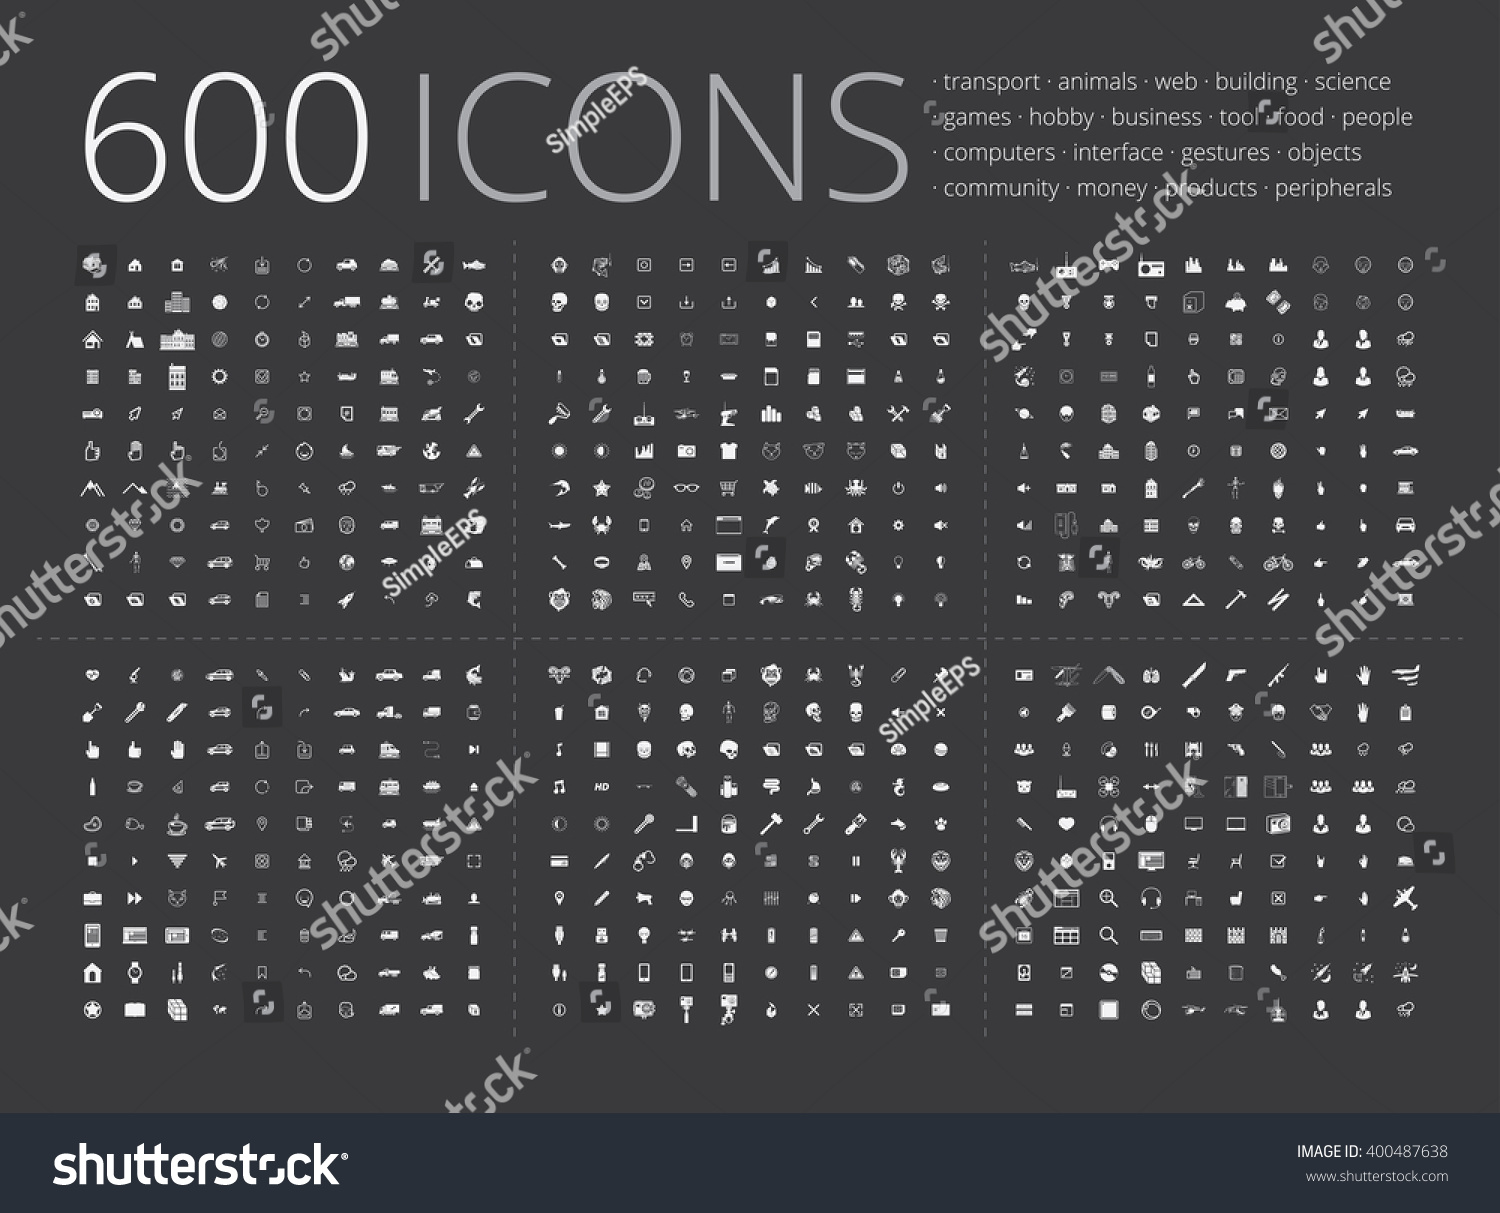 40 best free icon sets, Spring 2015 | Webdesigner Depot